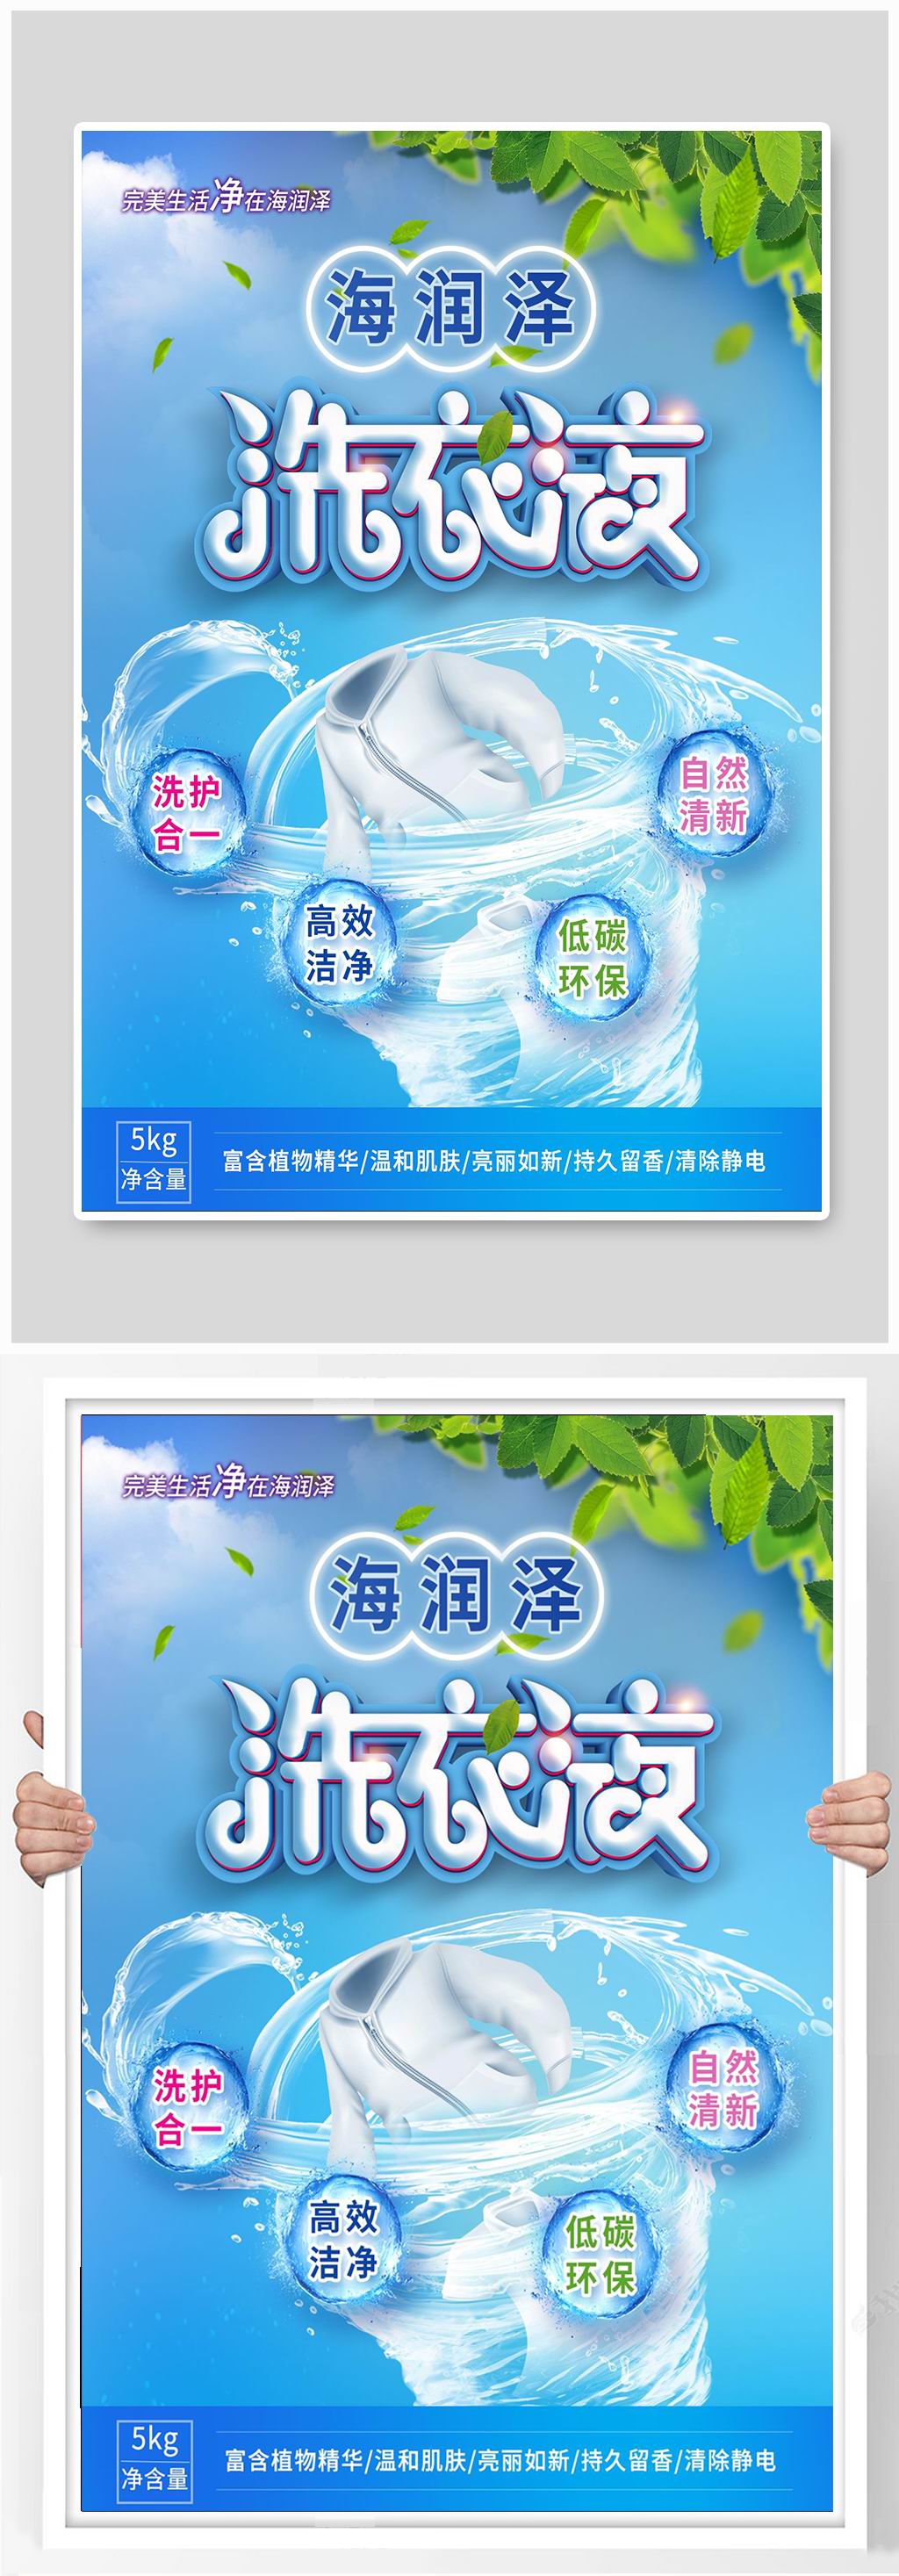 洗衣液宣传广告语图片